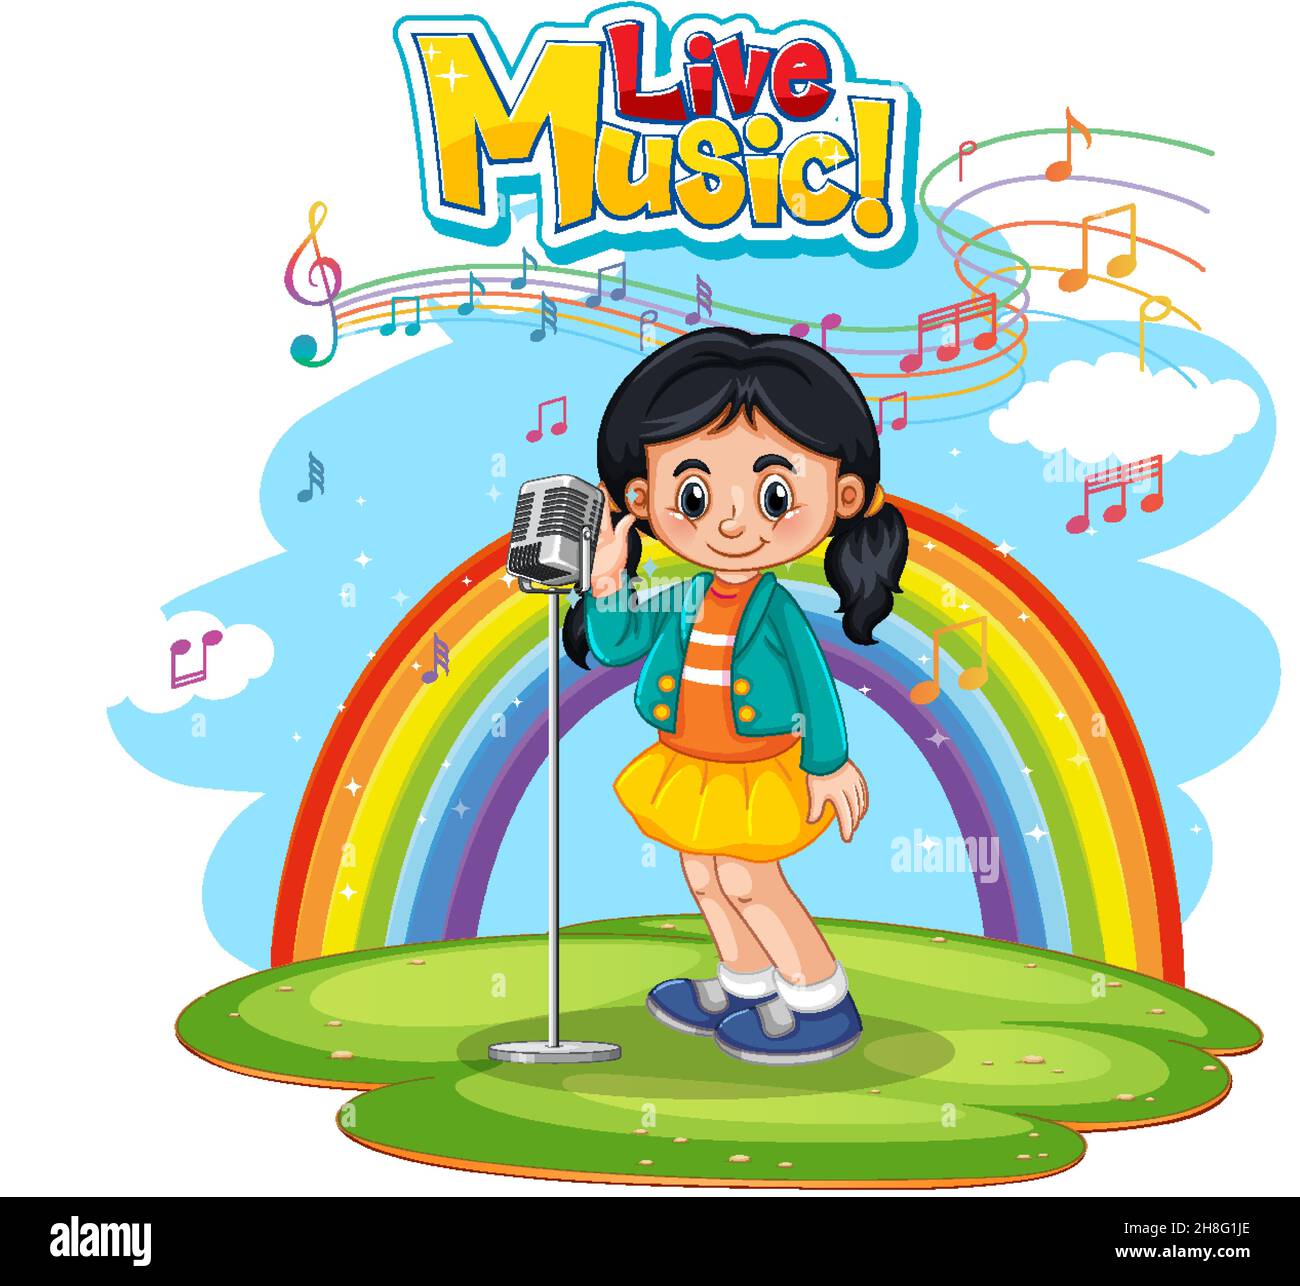 Live-Musik-Logo mit einem Mädchen singen auf Regenbogen Hintergrund Illustration Stock Vektor